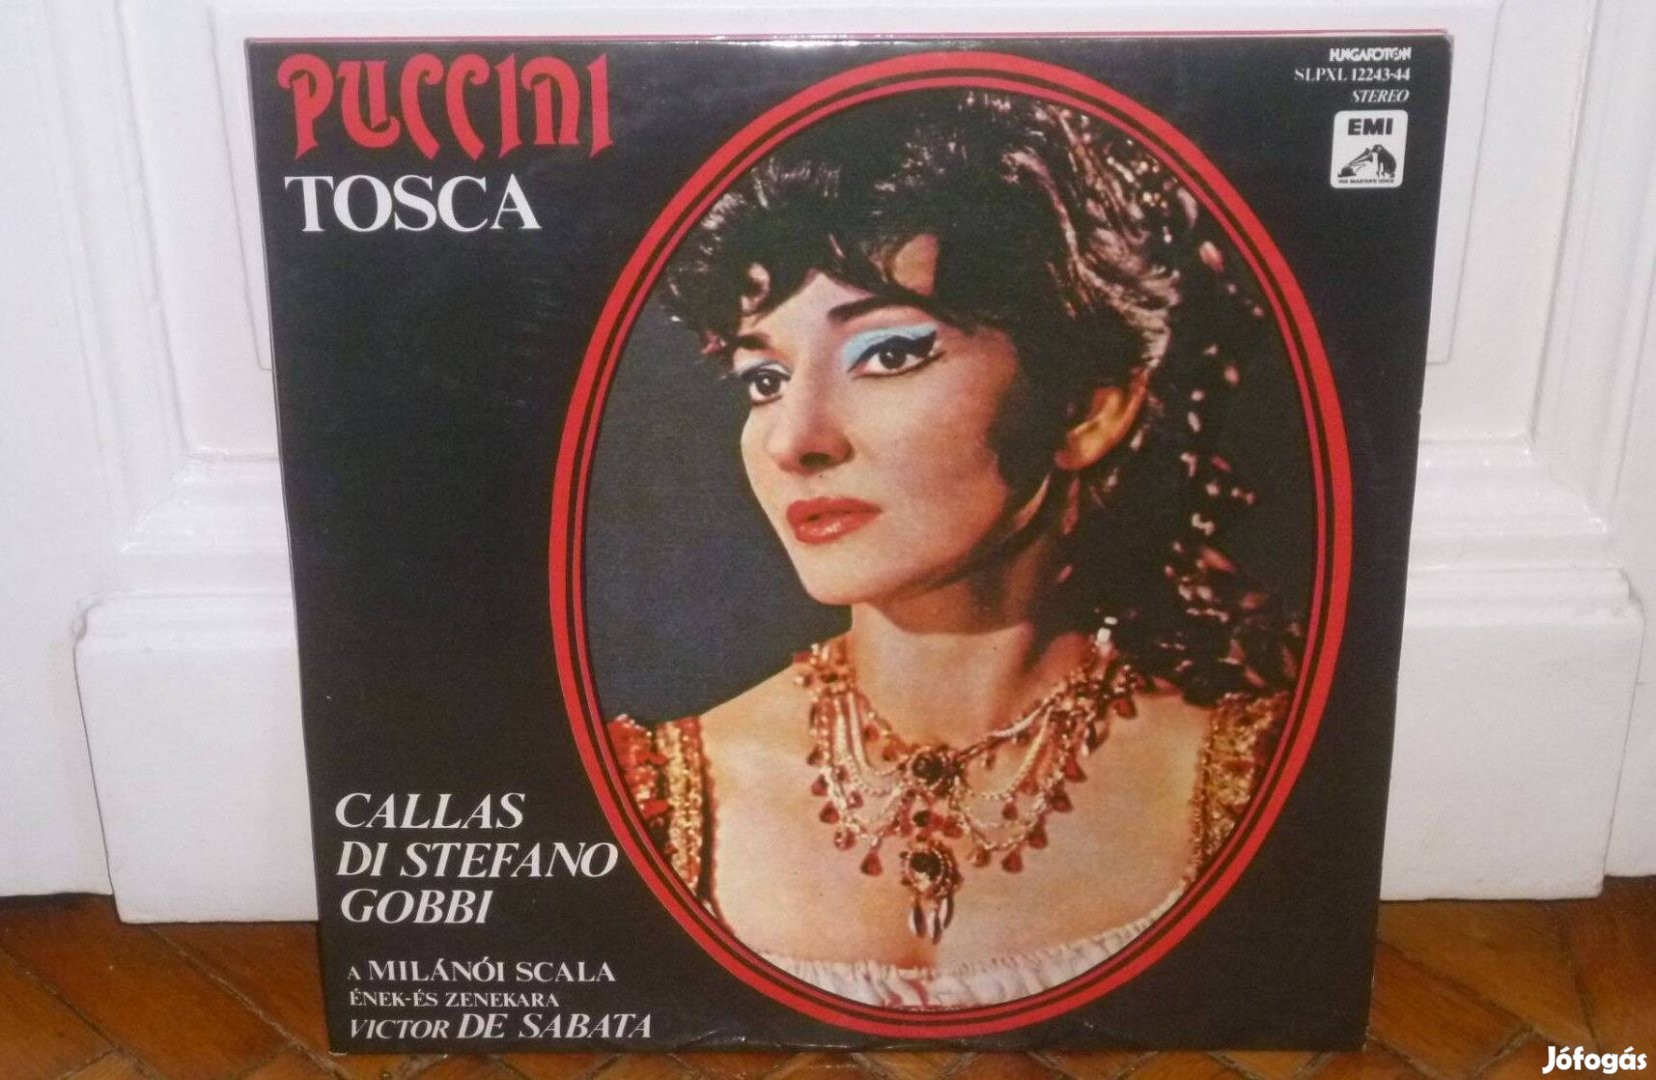 Puccini - Maria Callas, Giuseppe di Stefano - Tosca 2Xlp